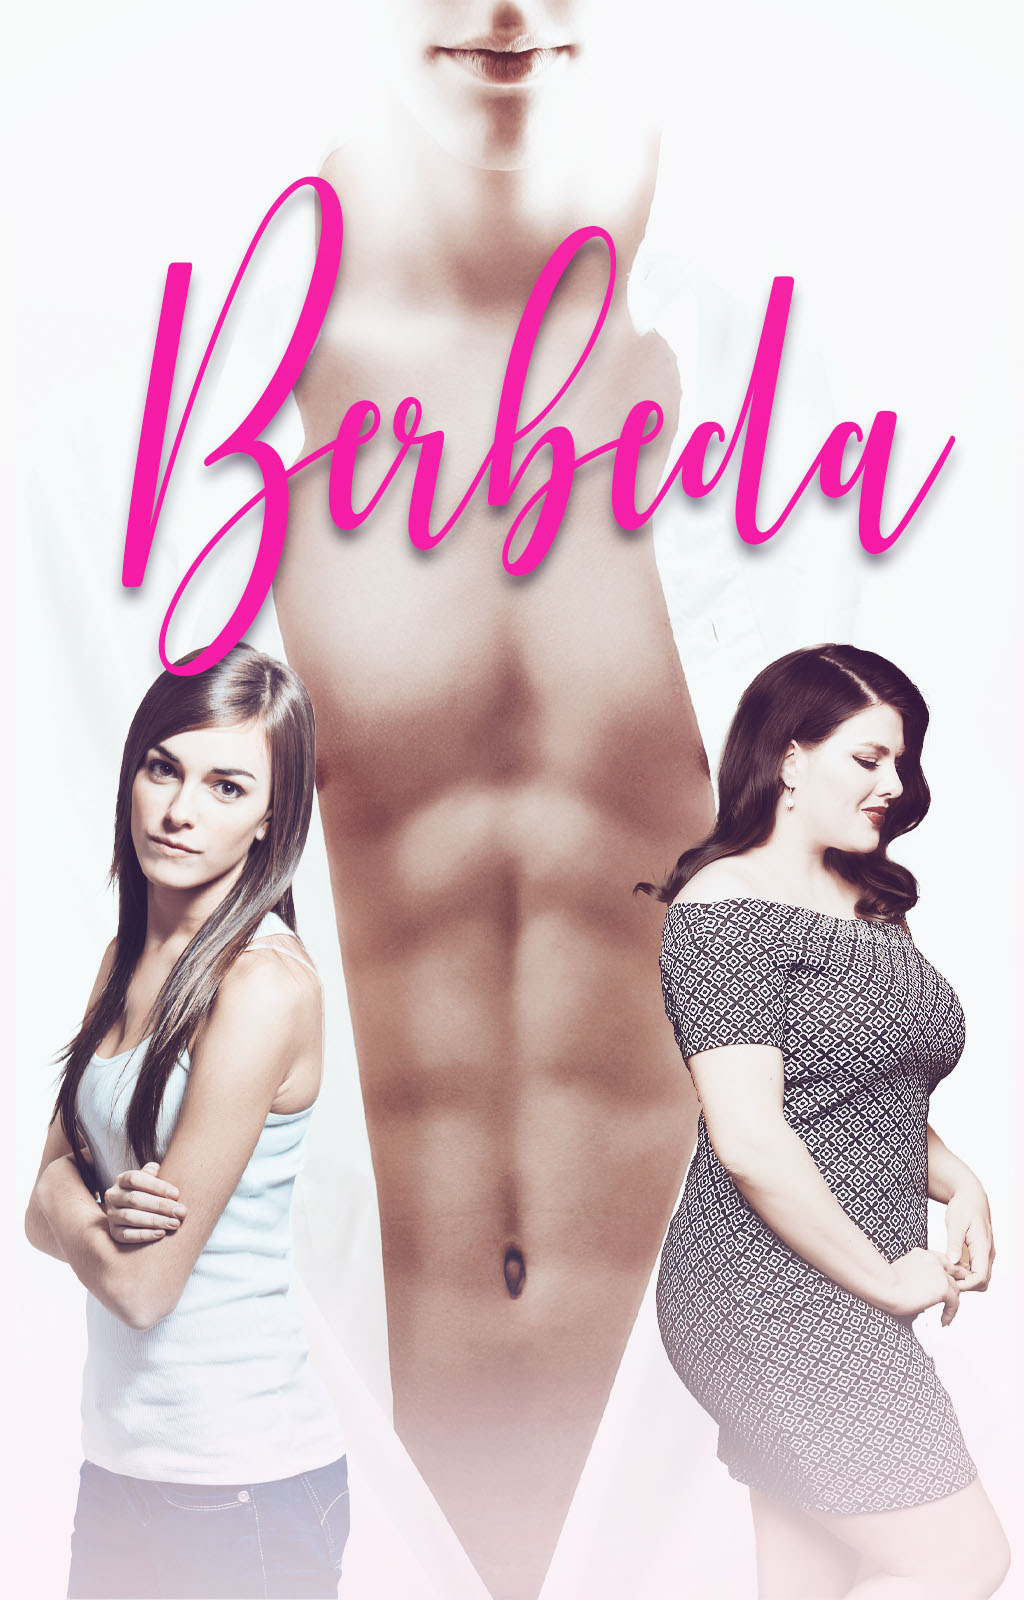 Berbeda - Book cover